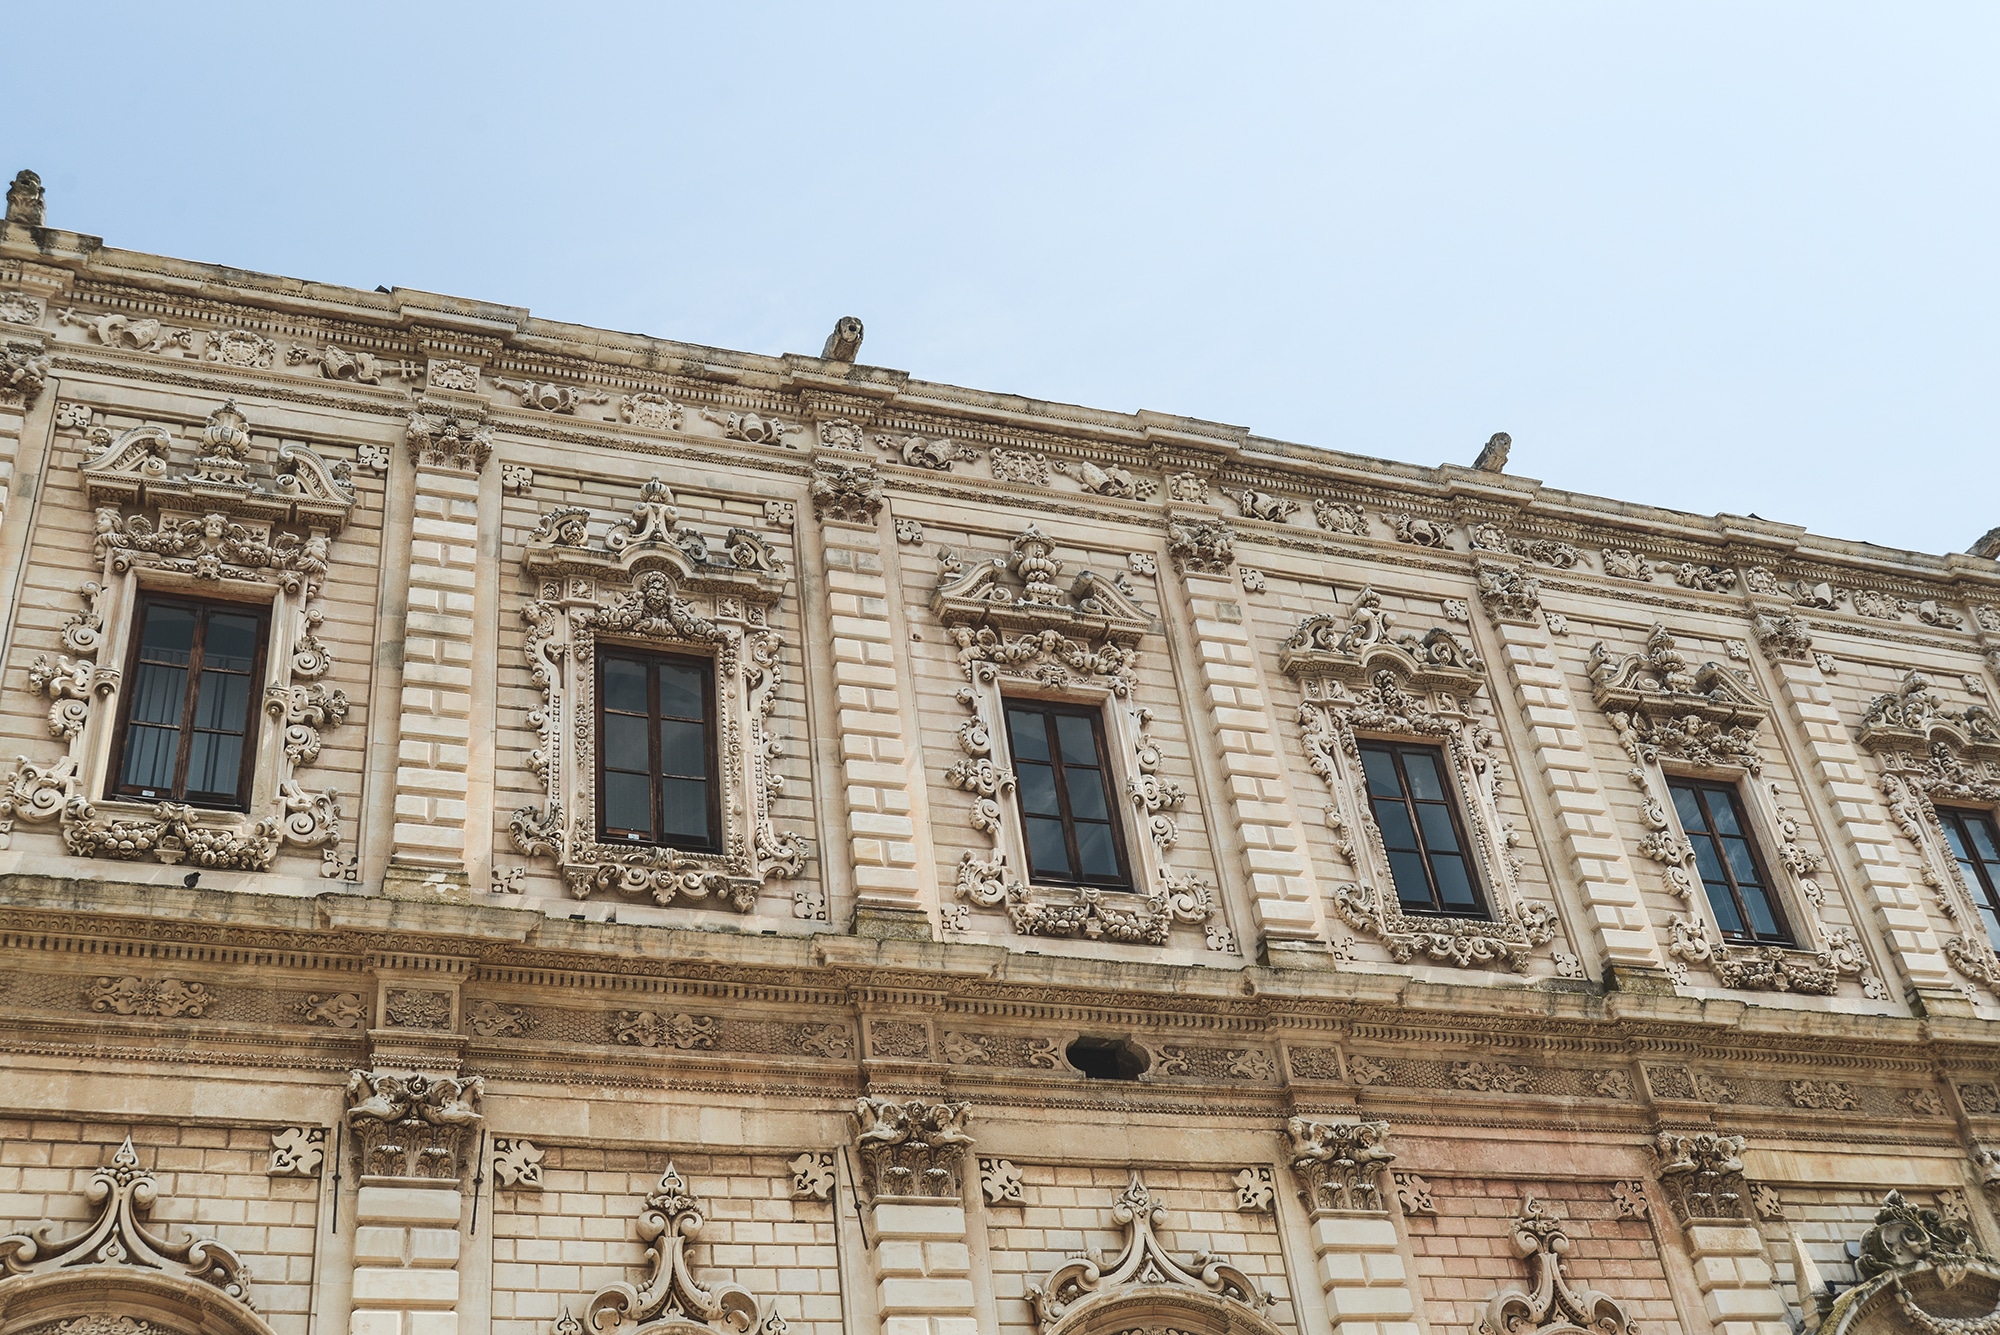 La façade de la Basilique di Santa Croce à Lecce dans les pouilles en Italie